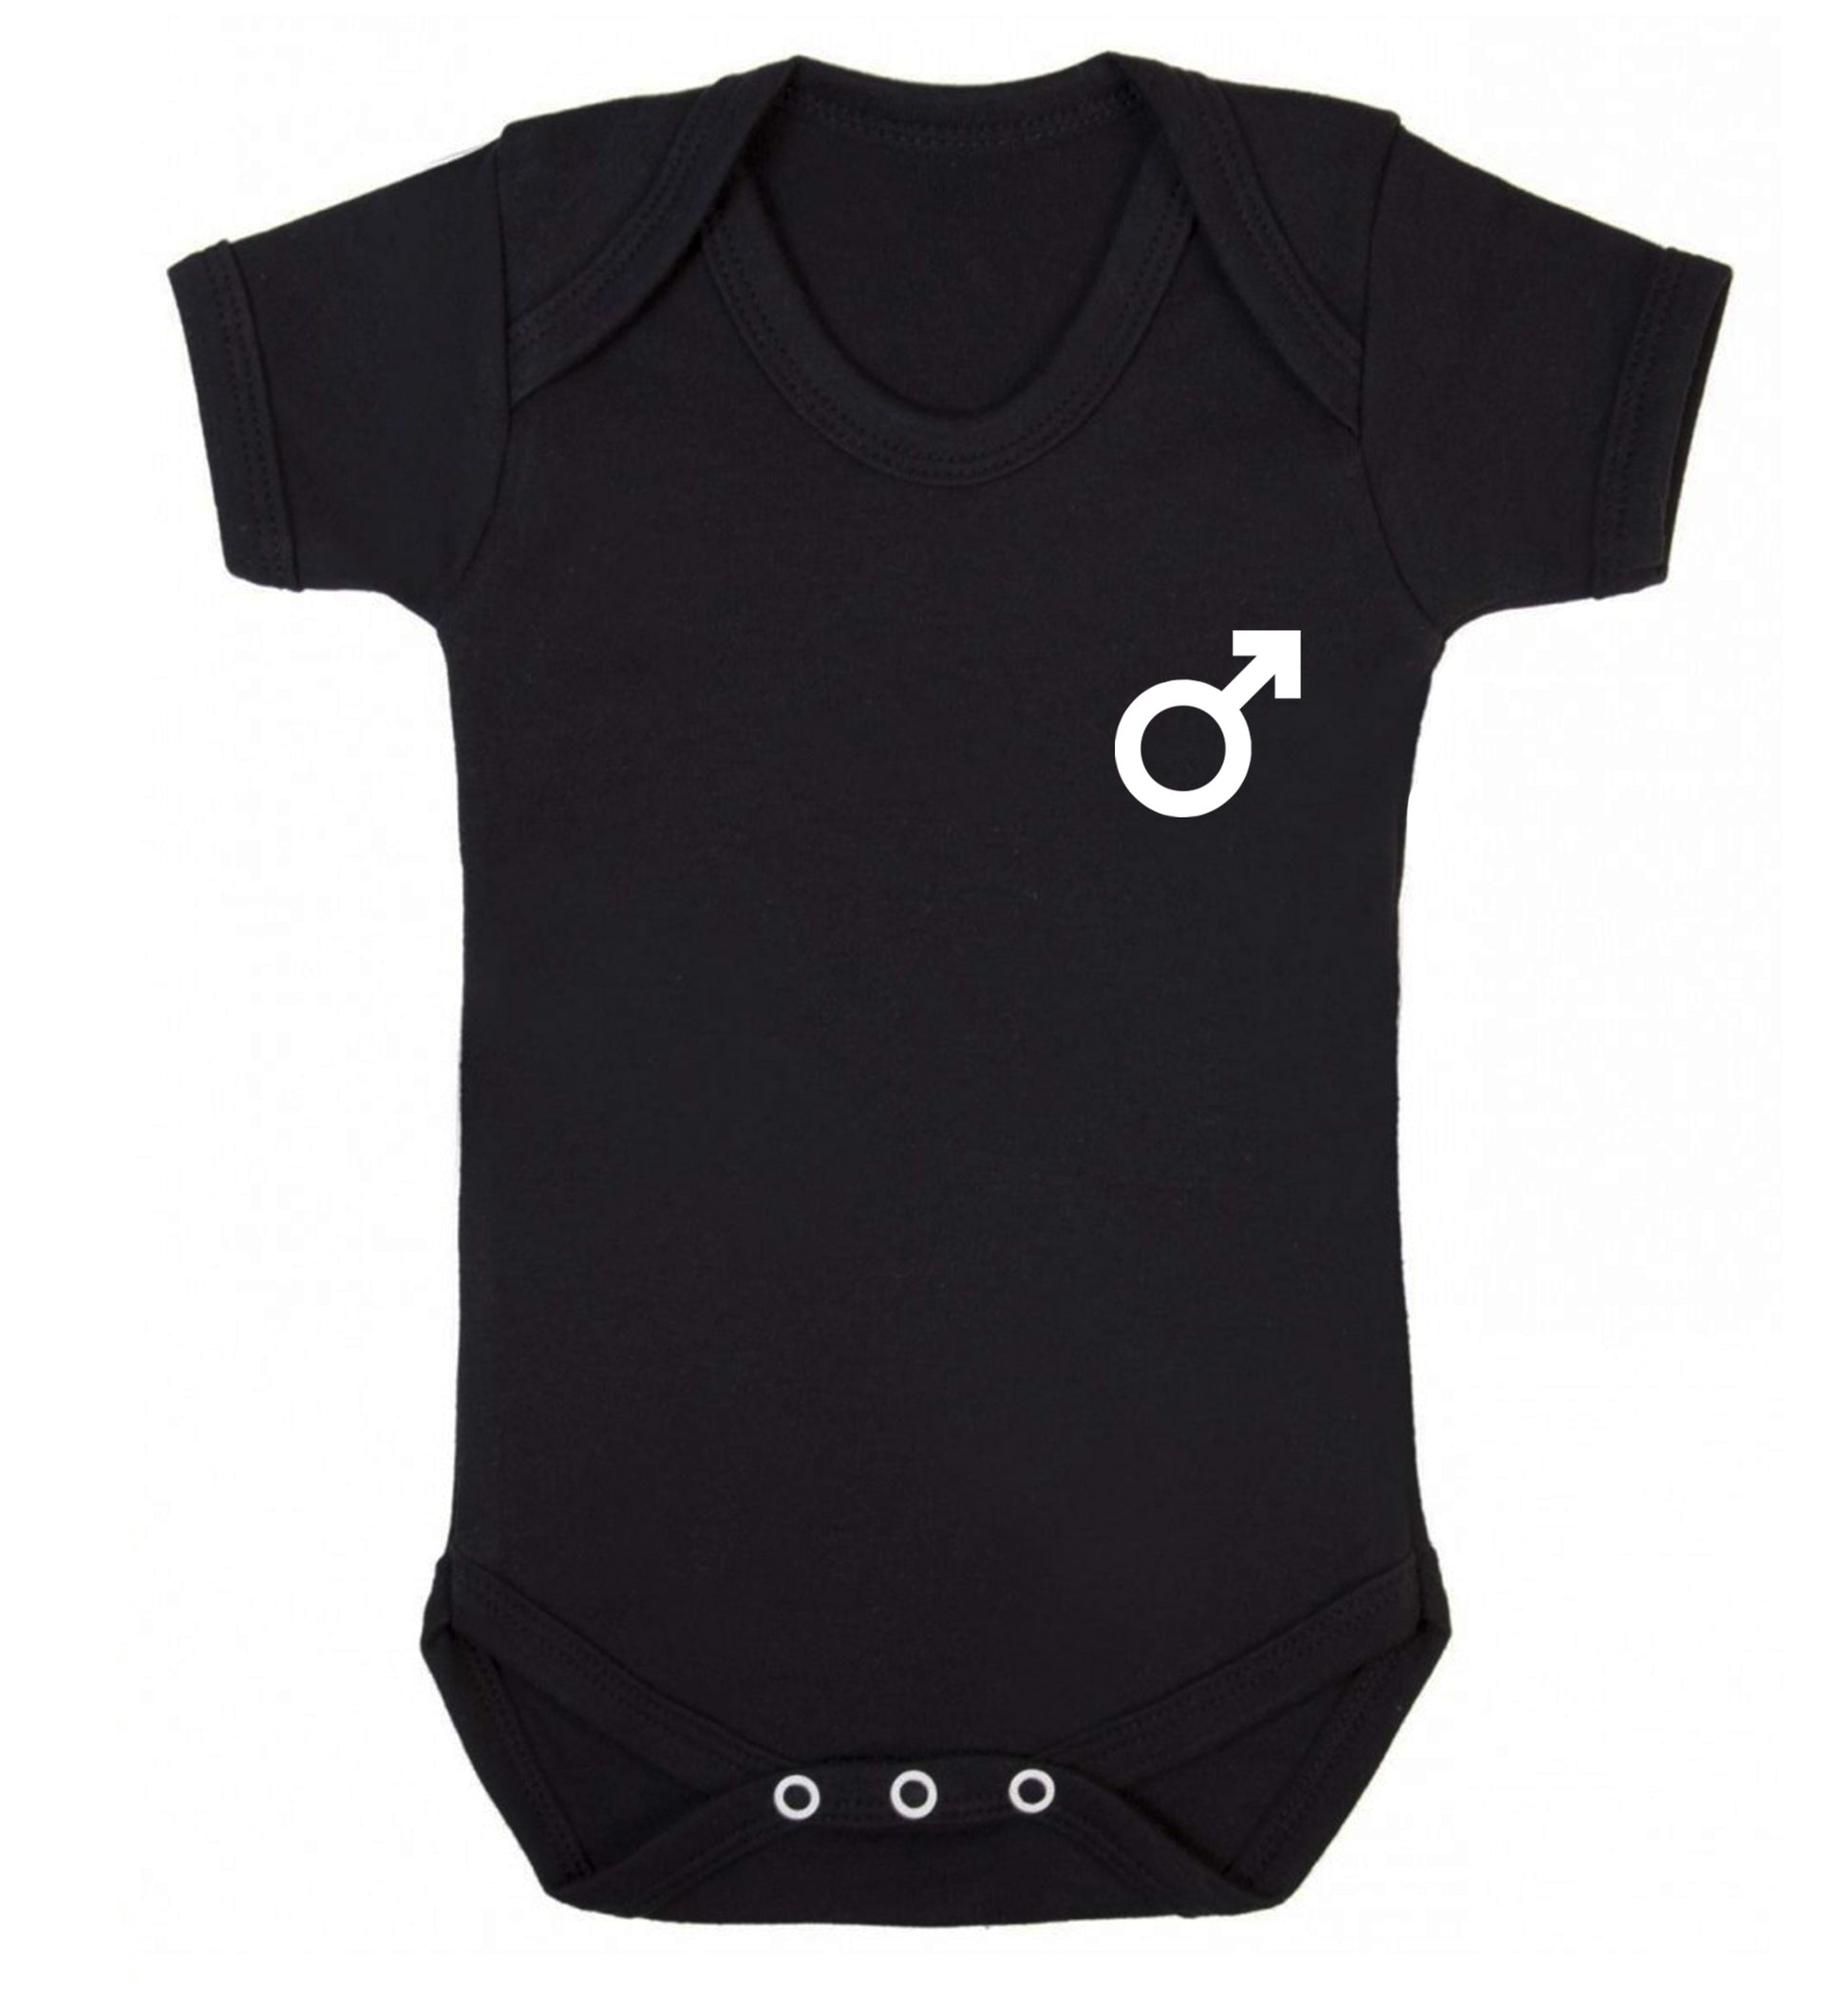 Male symbol pocket Baby Vest black 18-24 months